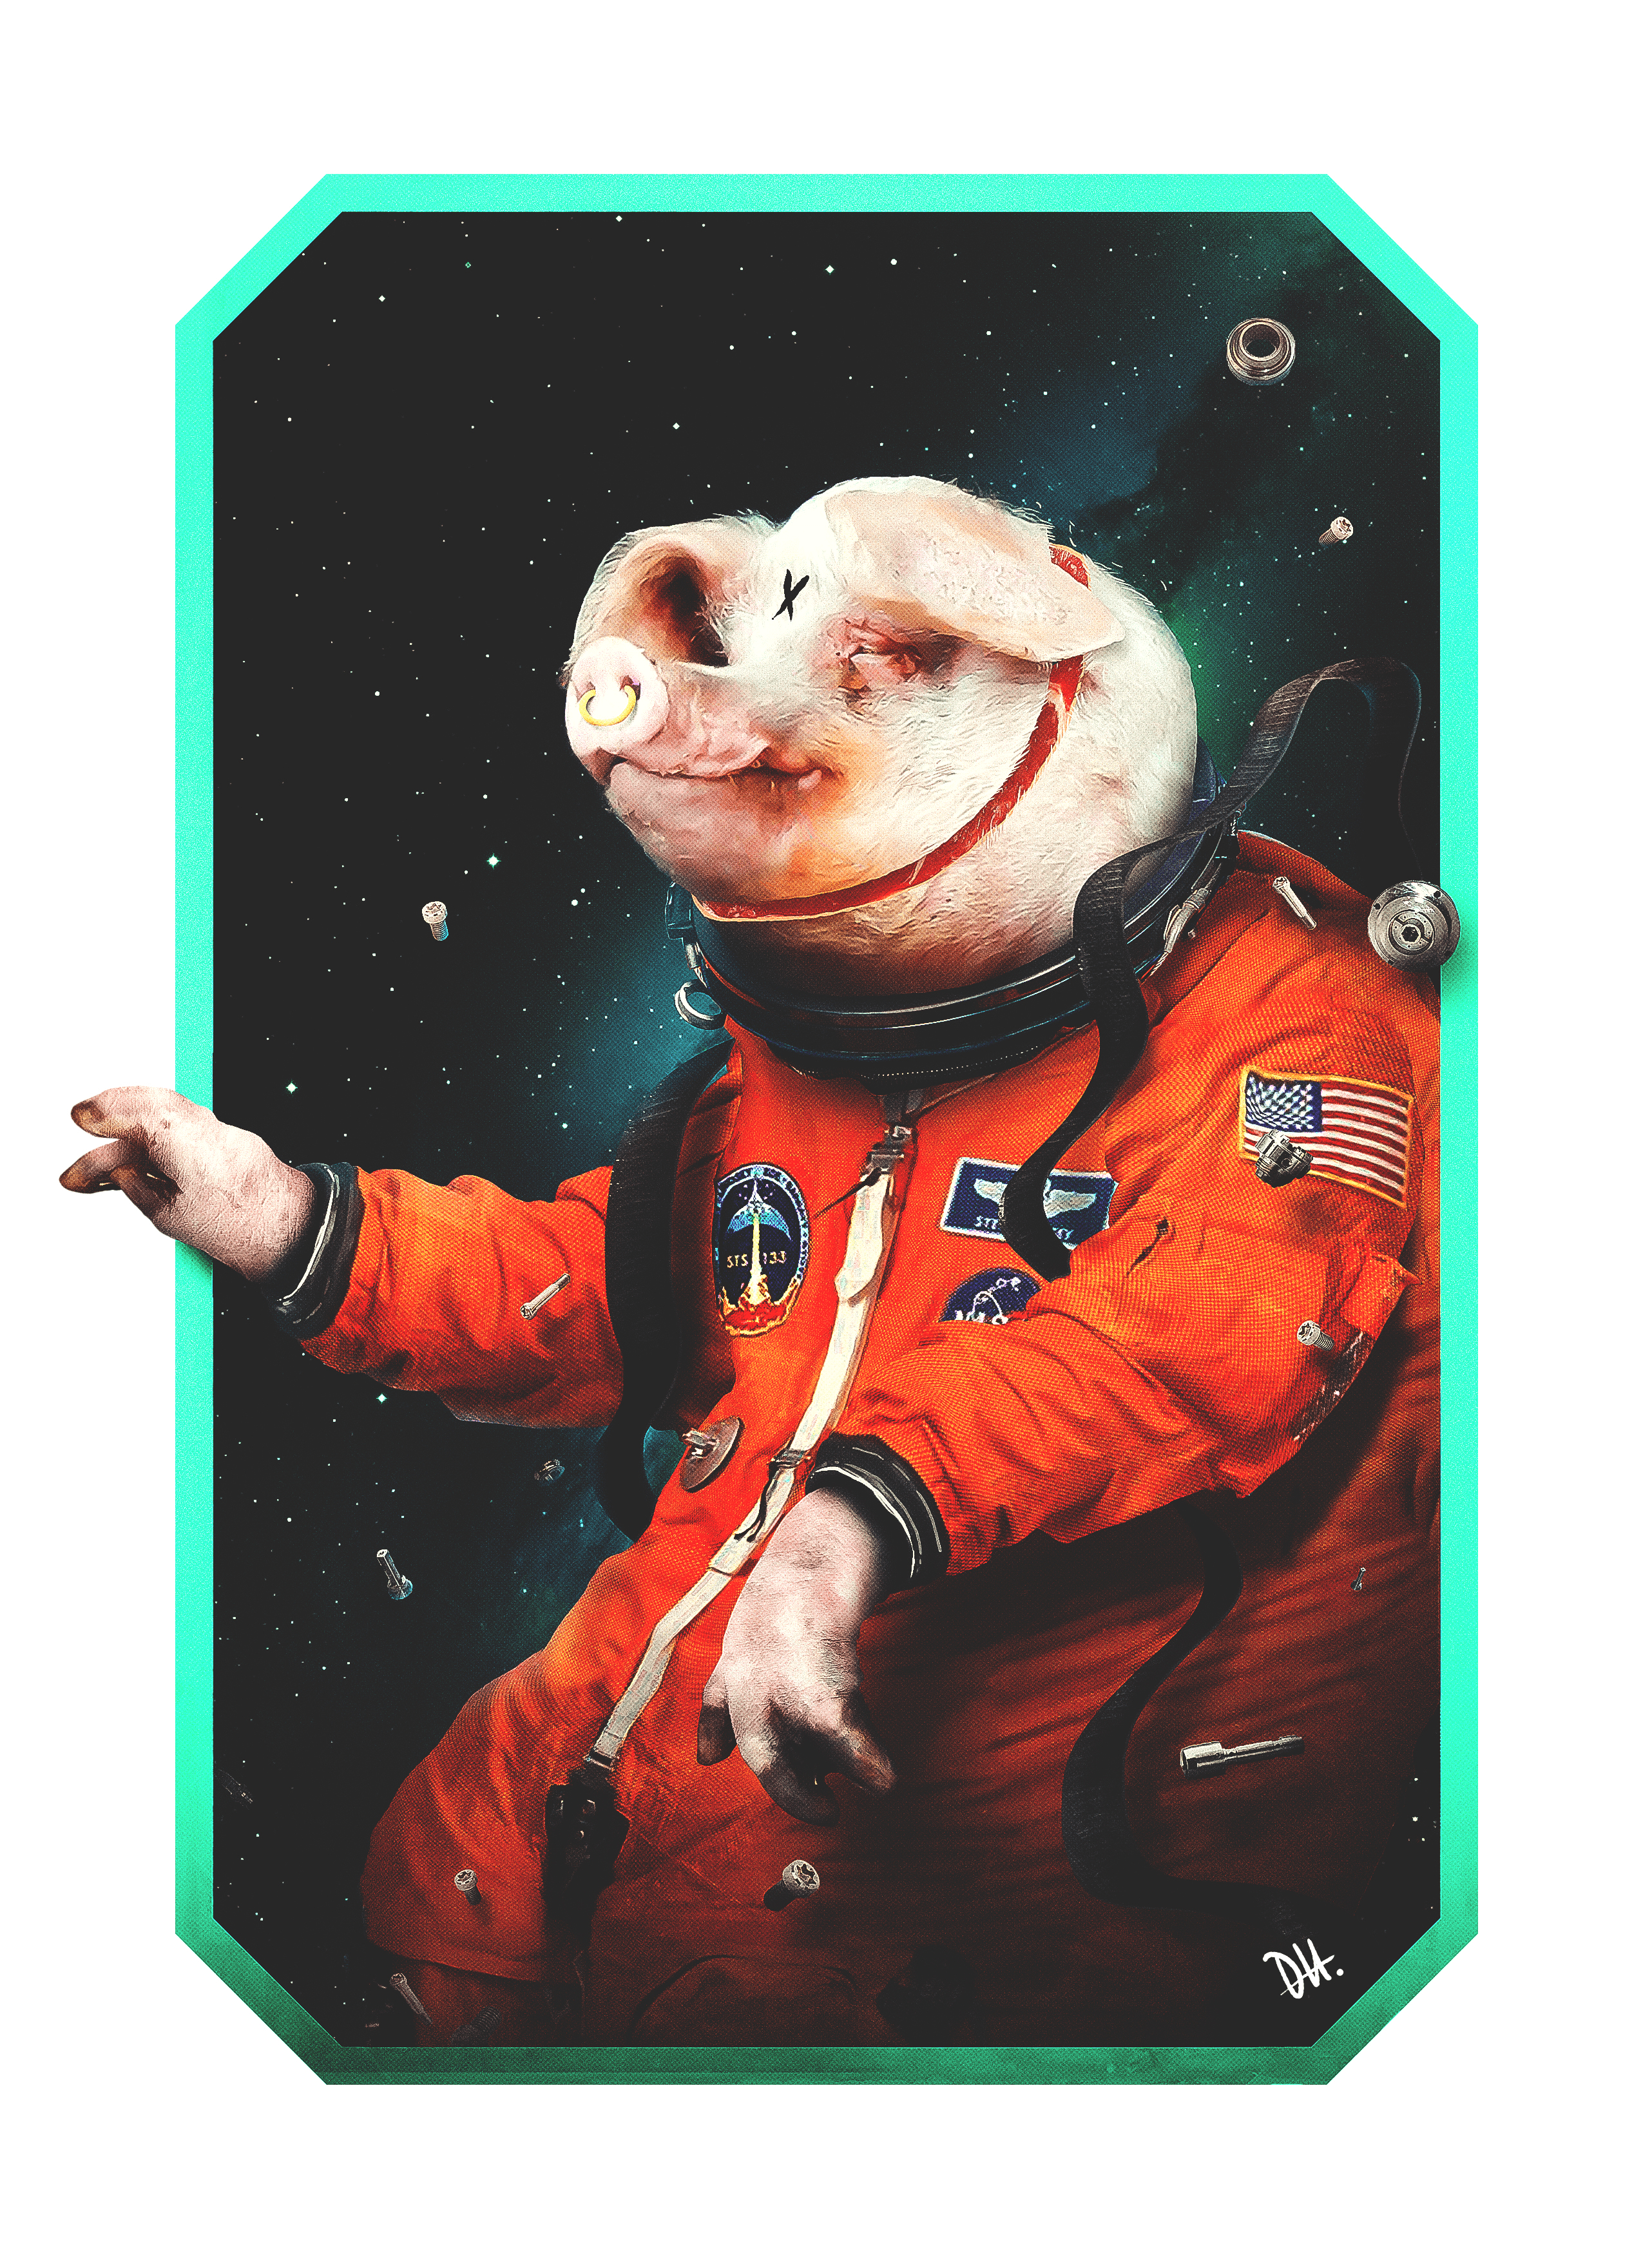 Astro Pig #1/1